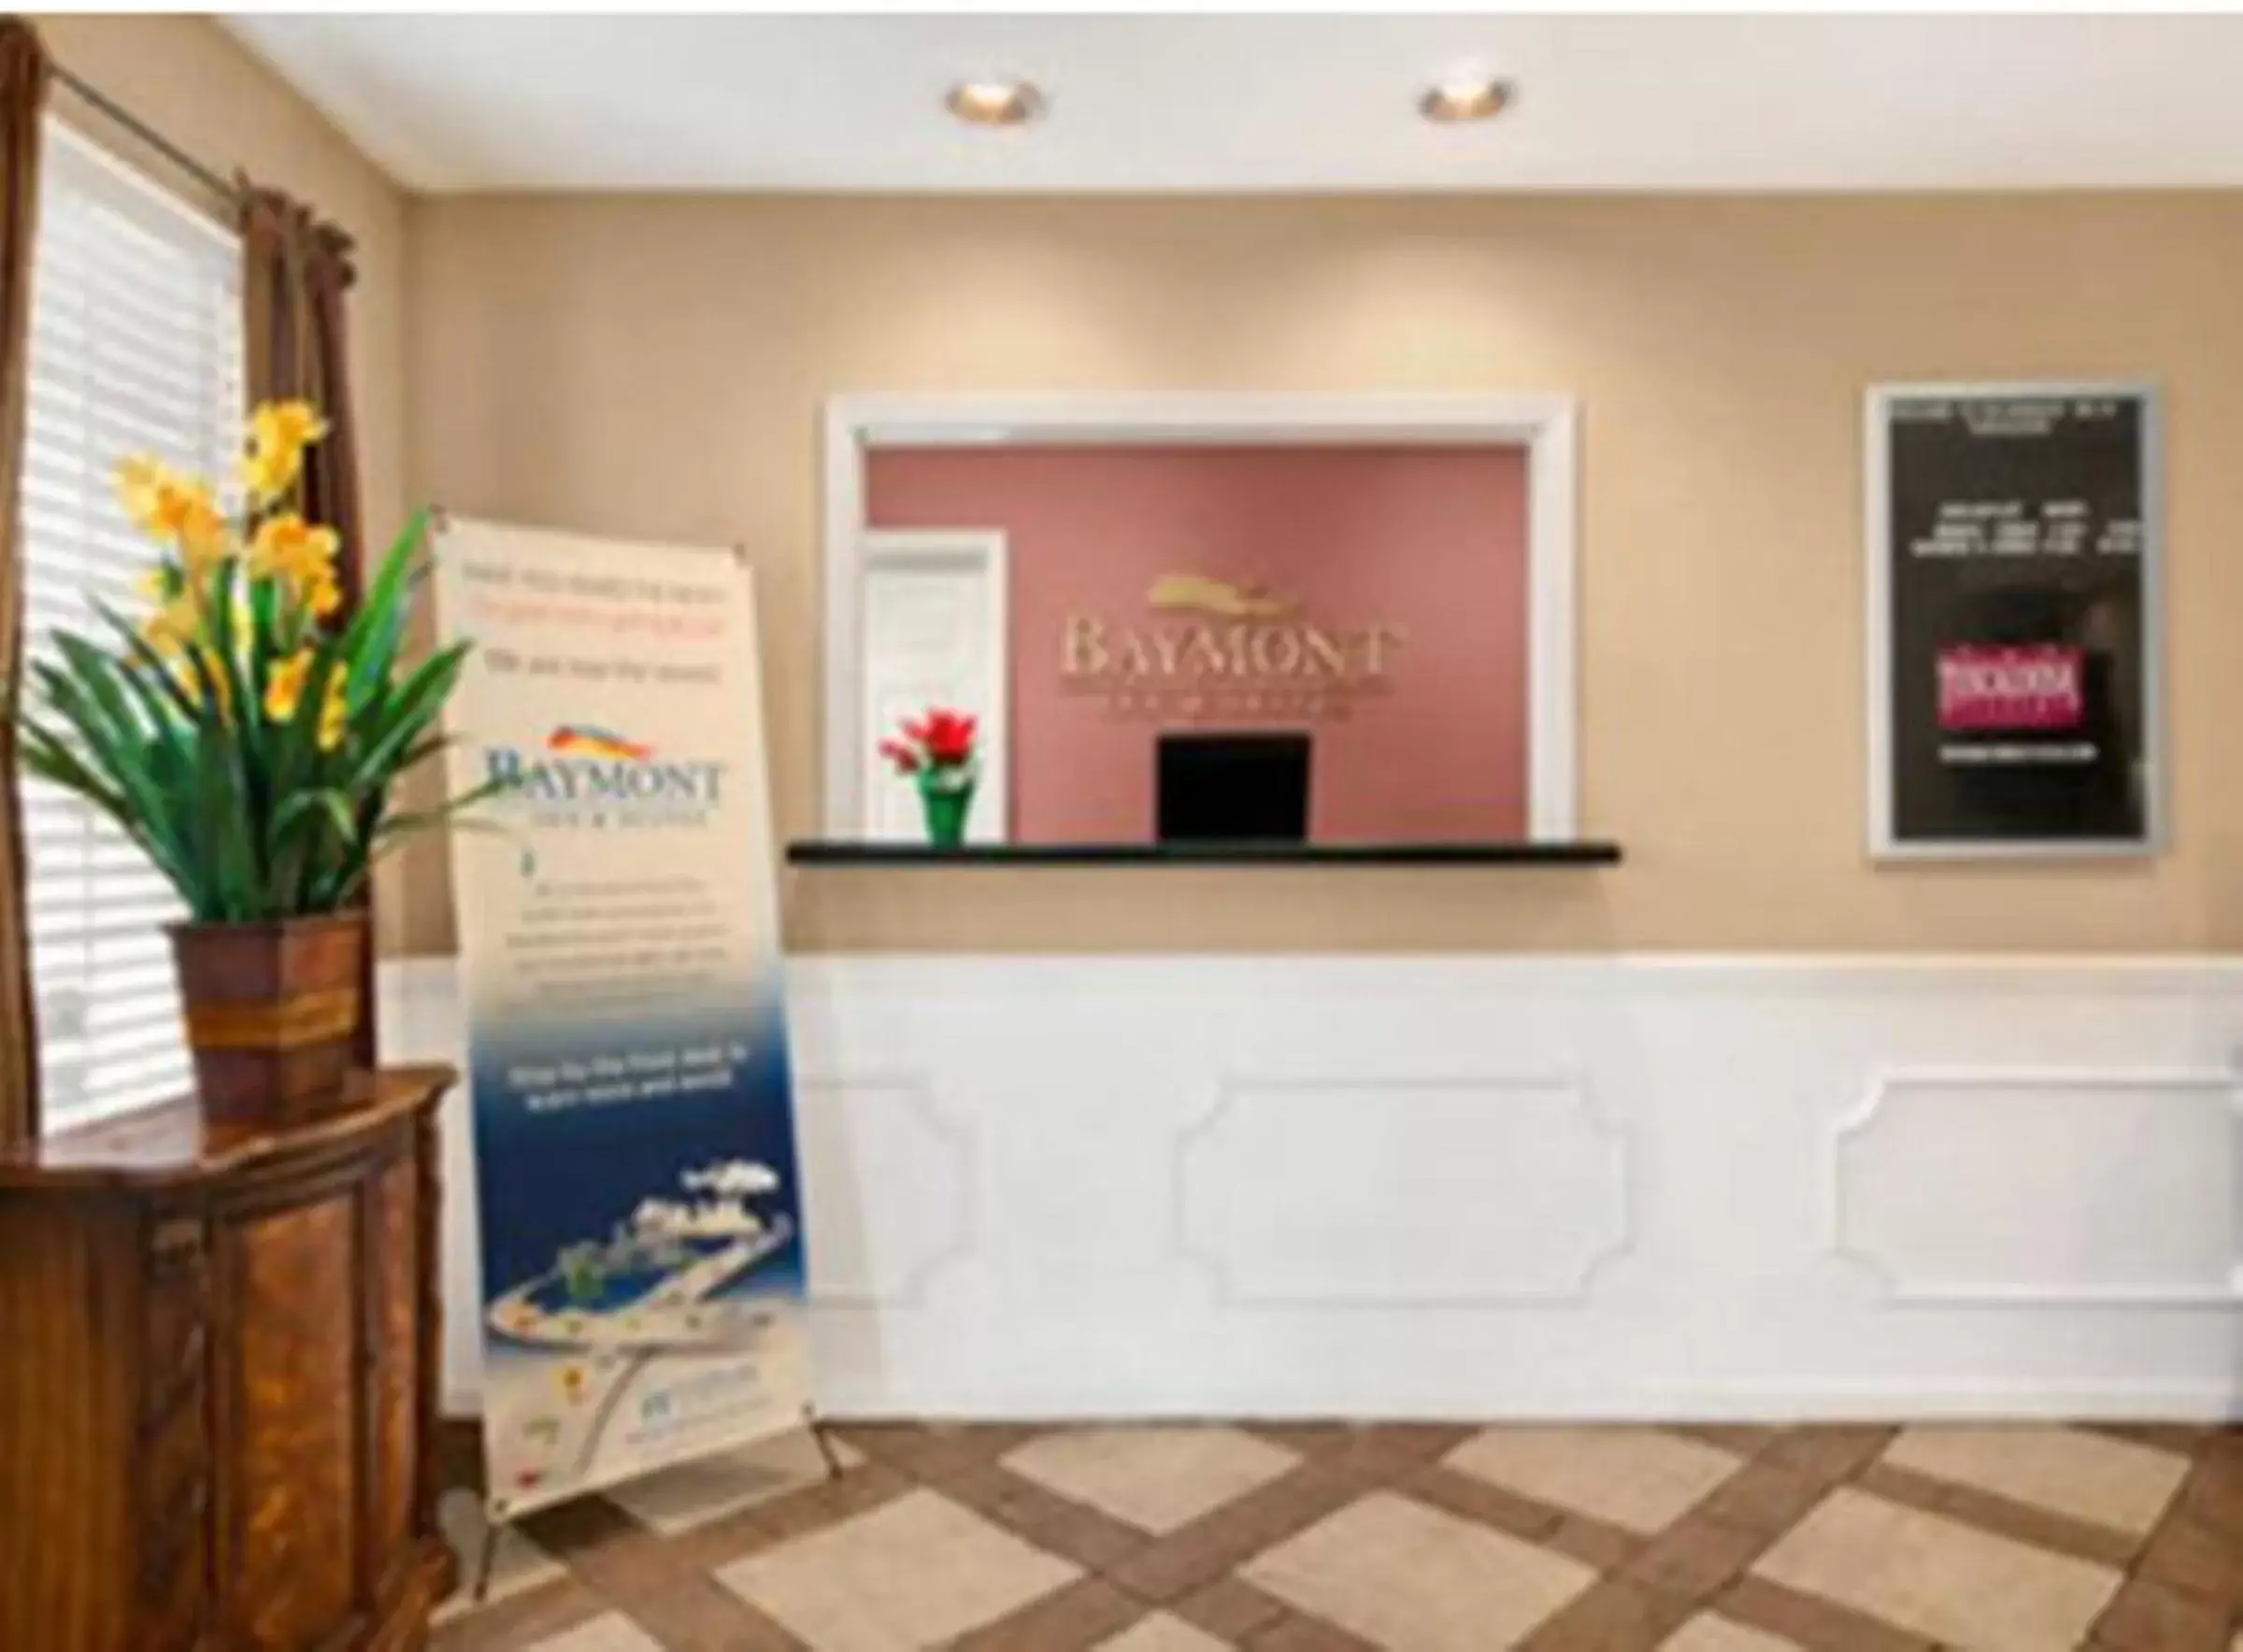 Lobby or reception, Lobby/Reception in Baymont by Wyndham Sanford